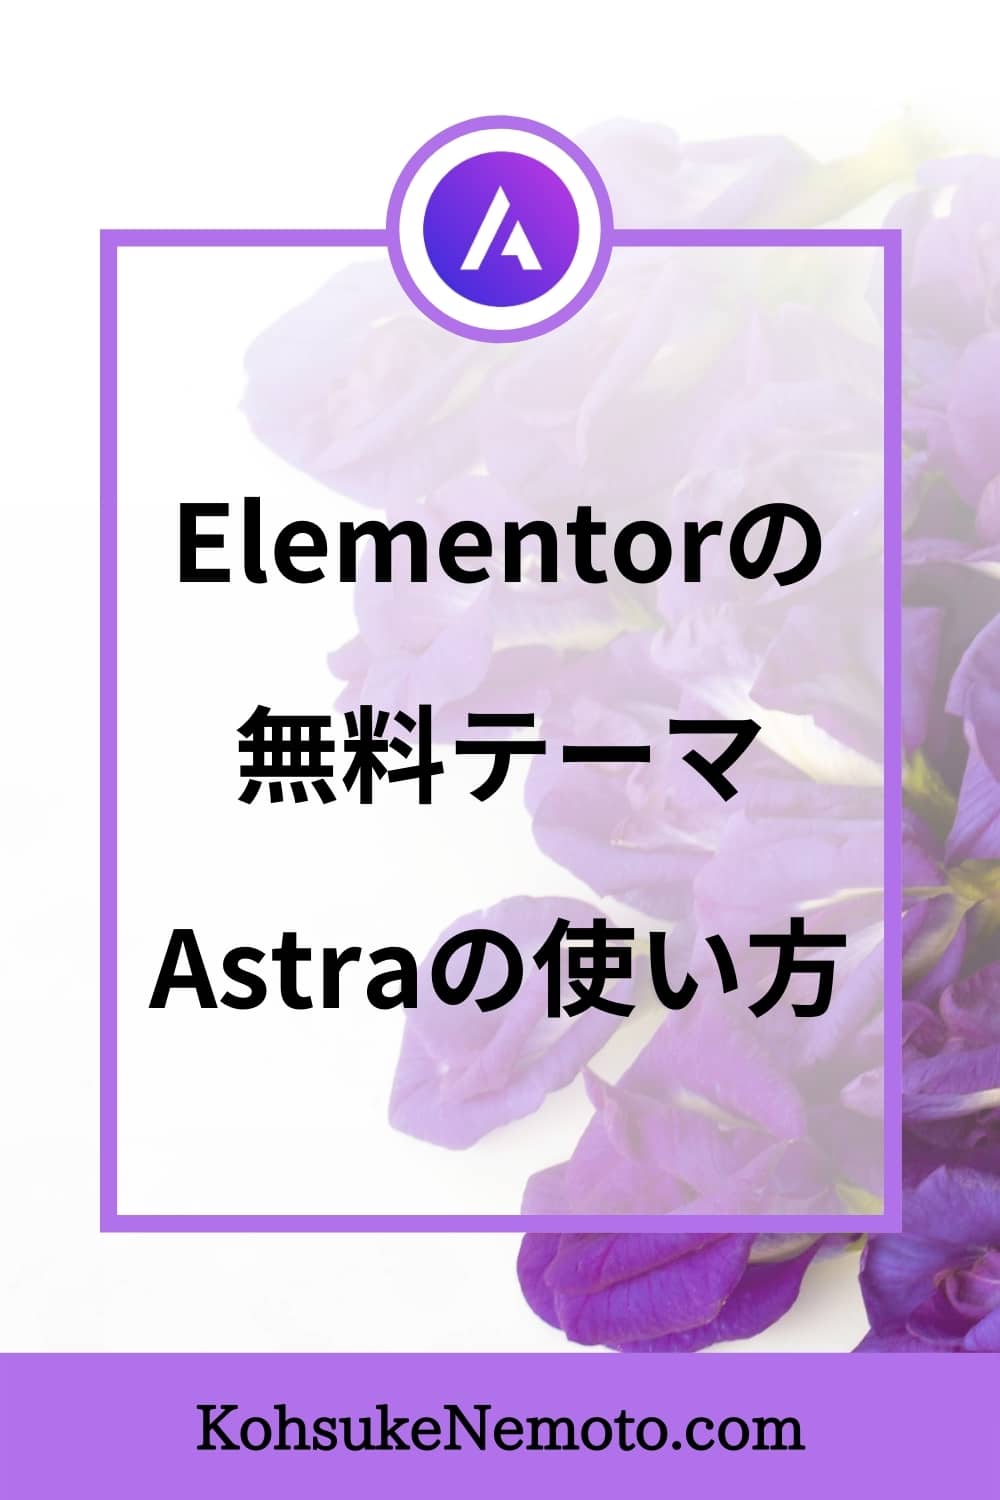 【Elementorユーザー必見】Astraテーマの使い方